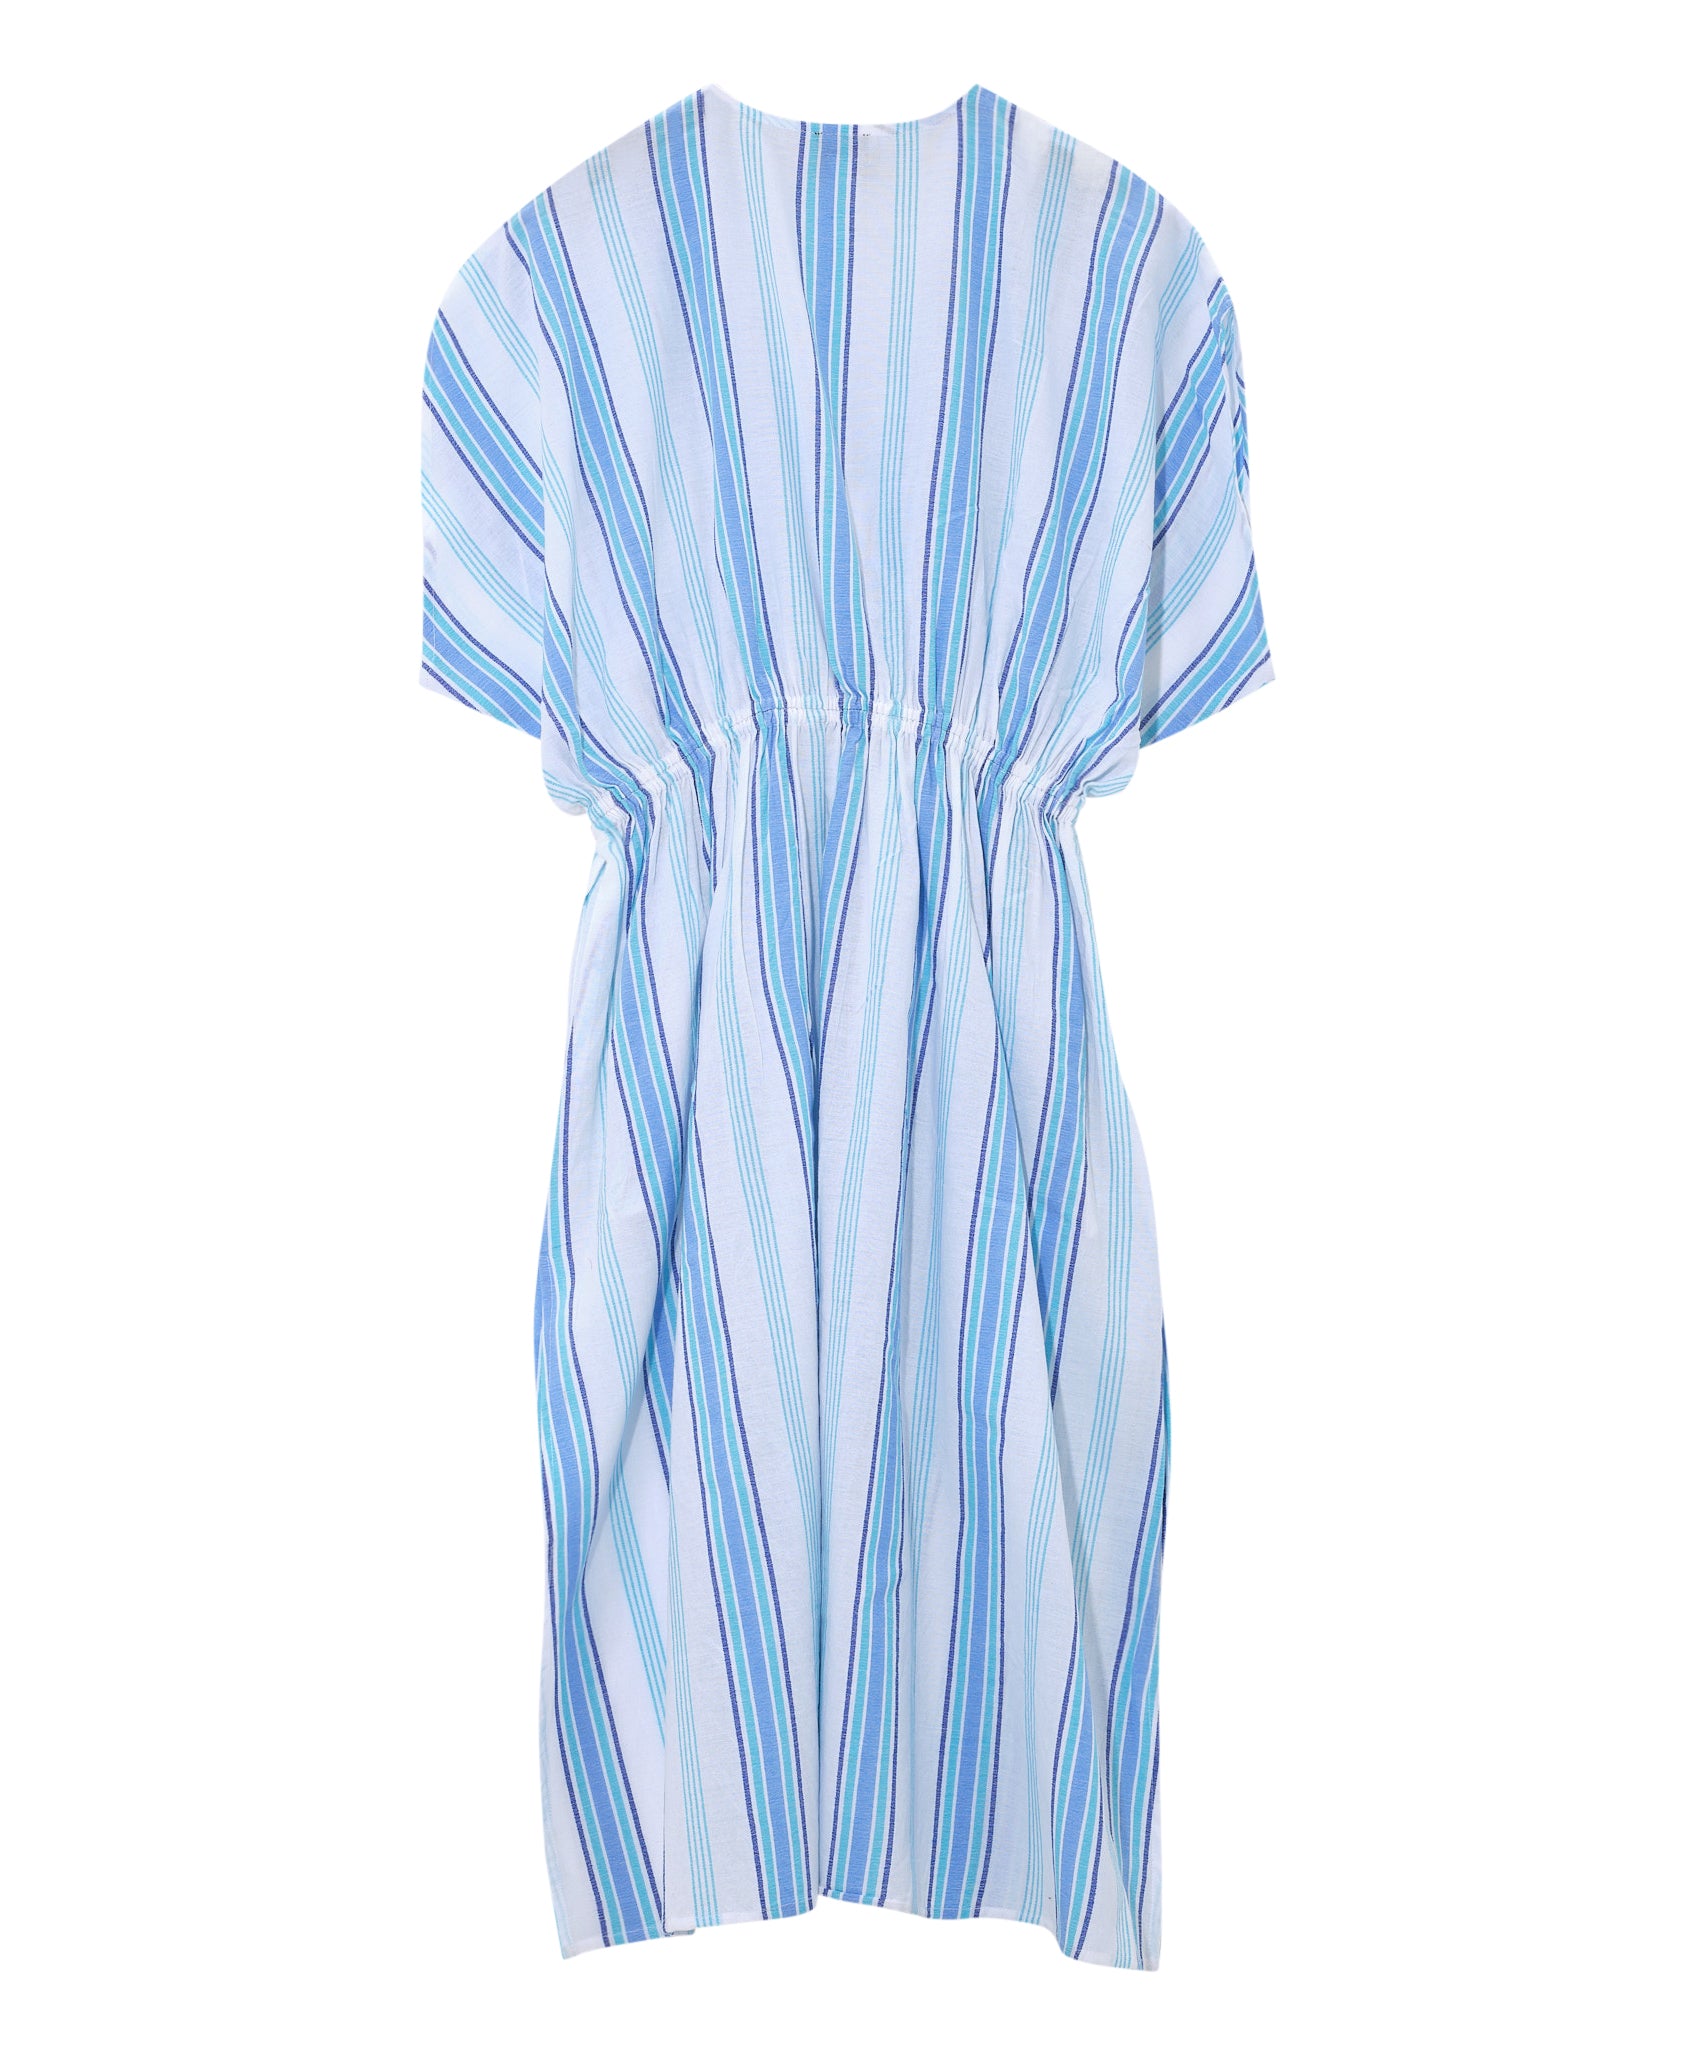 Umbrella Stripe Gemma Maxi Dress in color Capri